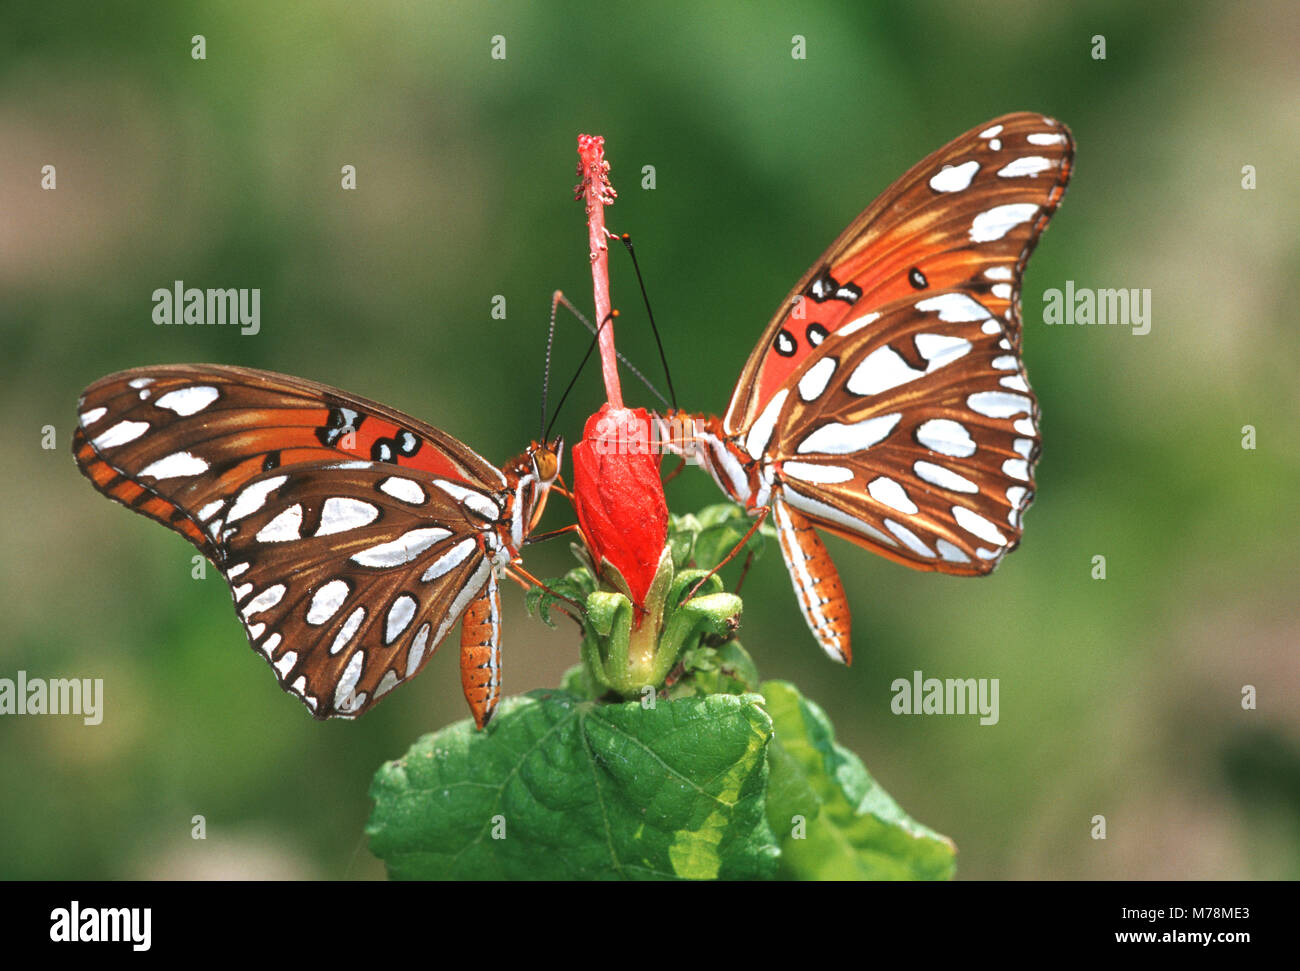 03305-003.08 Gulf Fritillaries (Agraulis vanillae) on Turks Cap (Malvaviscus arboreus var. Drummondii) NABA Butterfly Park, Mission, TX Stock Photo